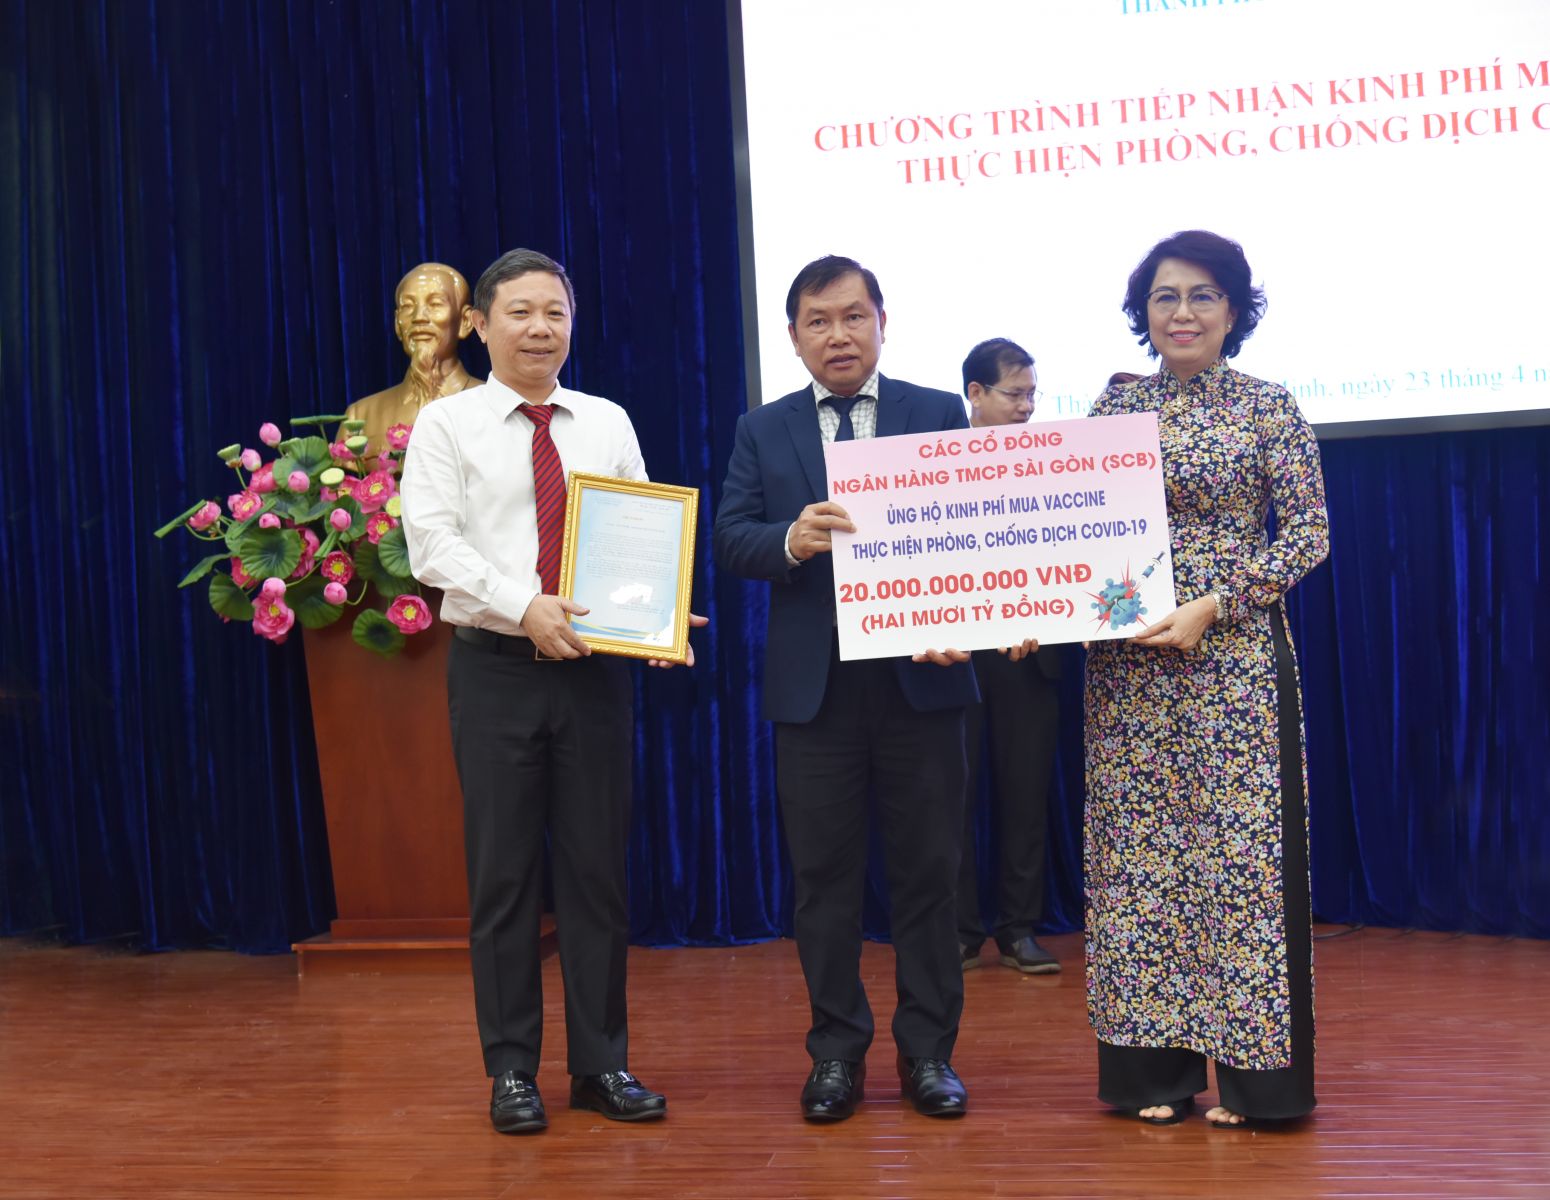  các cổ đông của Ngân hàng Sài Gòn (SCB) đã đóng góp 20 tỷ đồng vào Quỹ phòng chống dịch Covid-19 của TP.HCM 